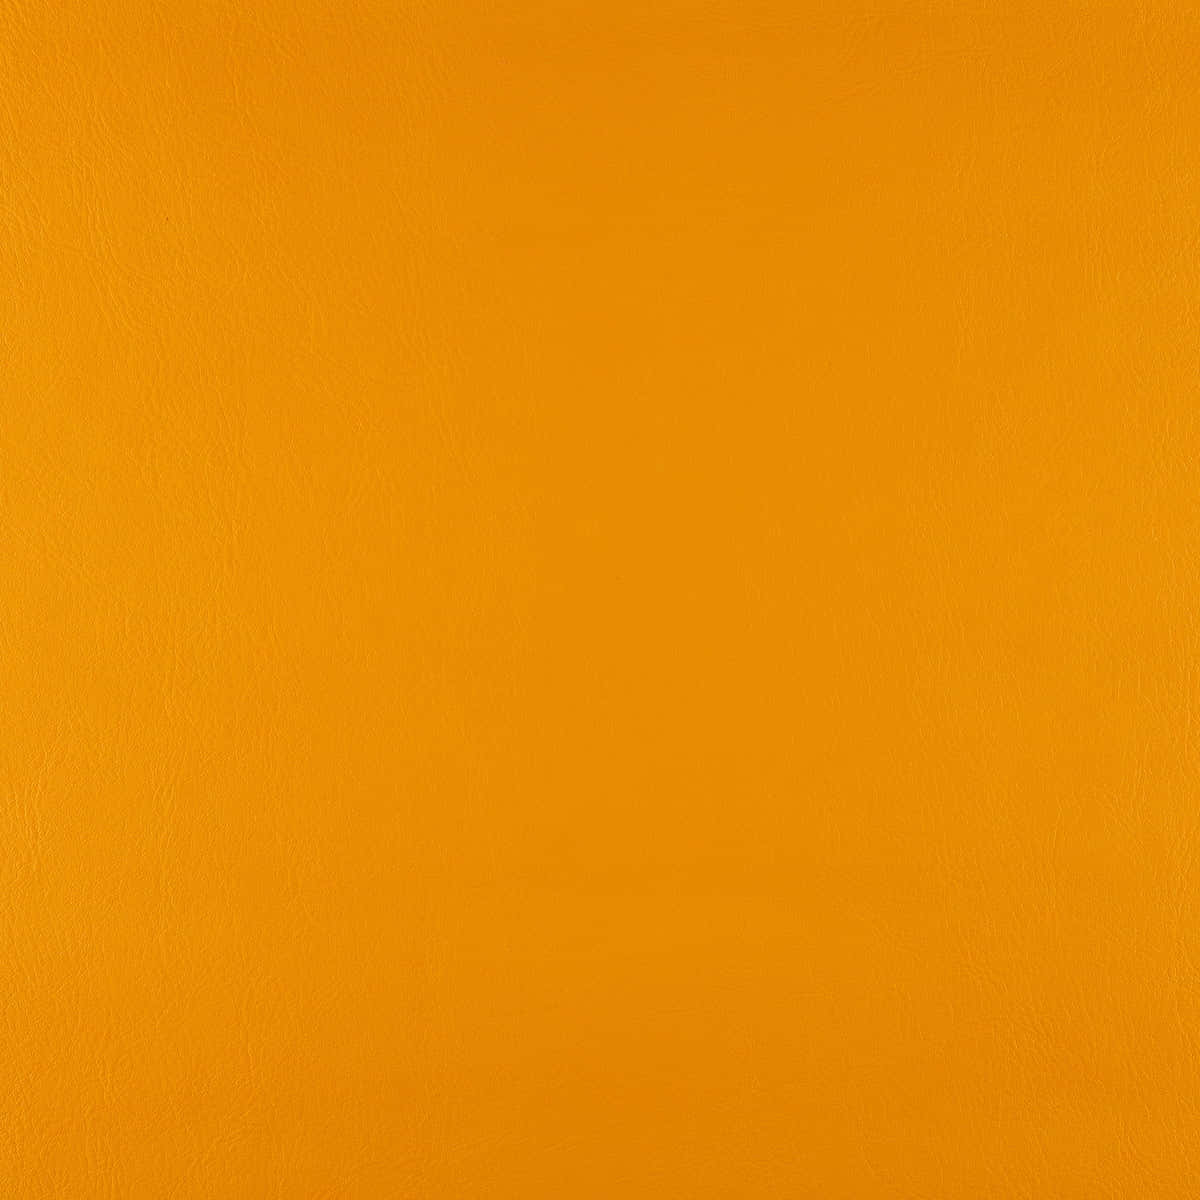 Et lyst og farverigt baggrundslys i orange. Wallpaper